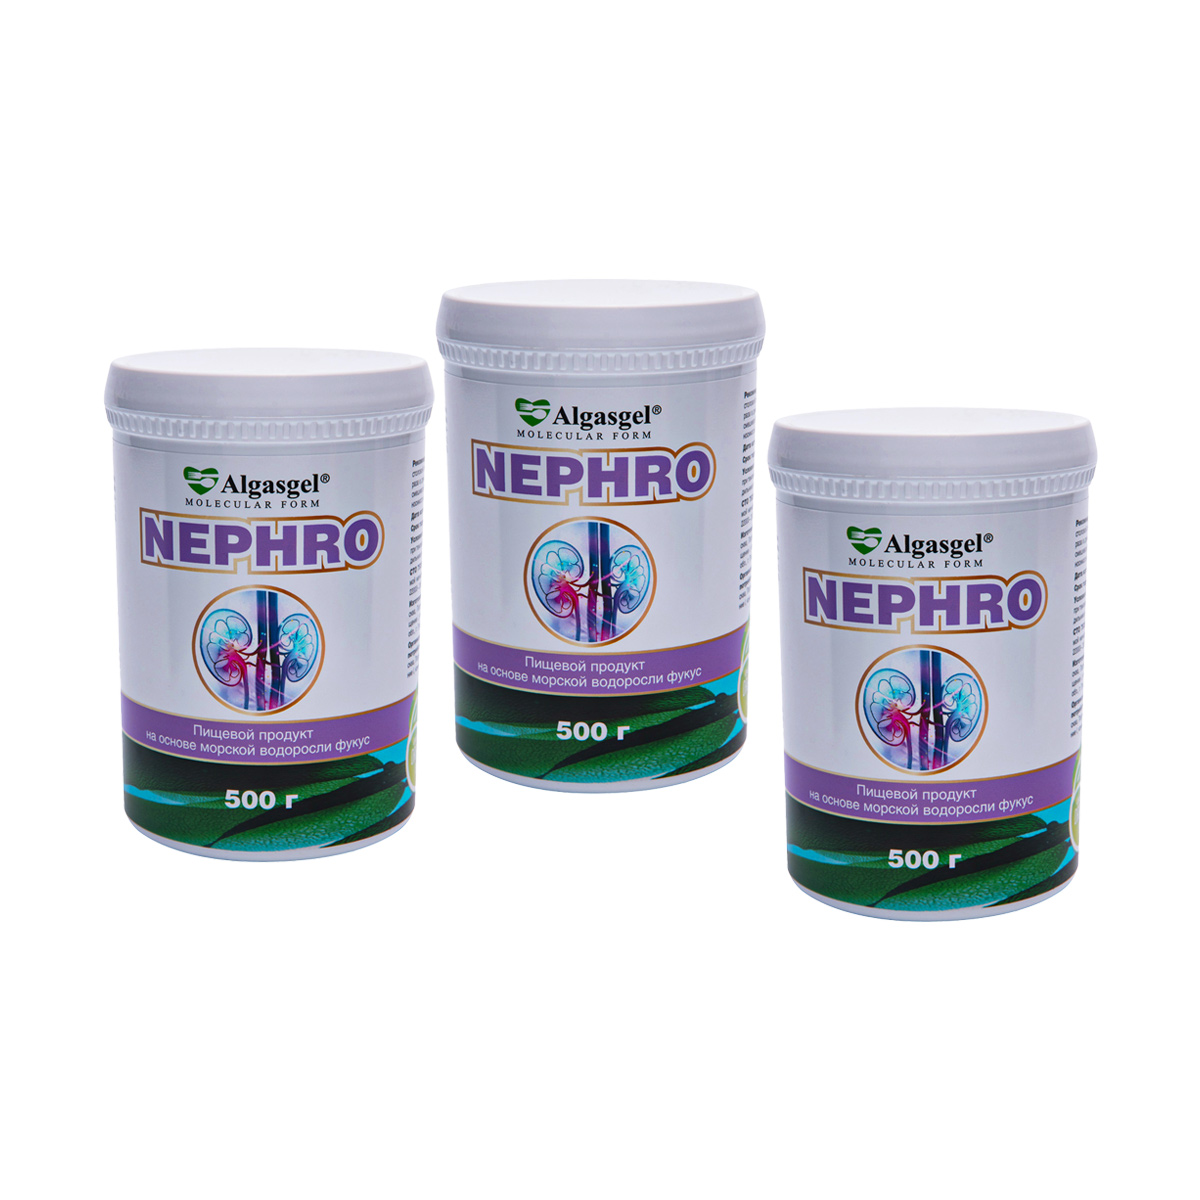 Algasgel Nephro для комплексного оздоровления почек и мочевыделительной системы (2 уп. по 500 г + 1 в подарок)